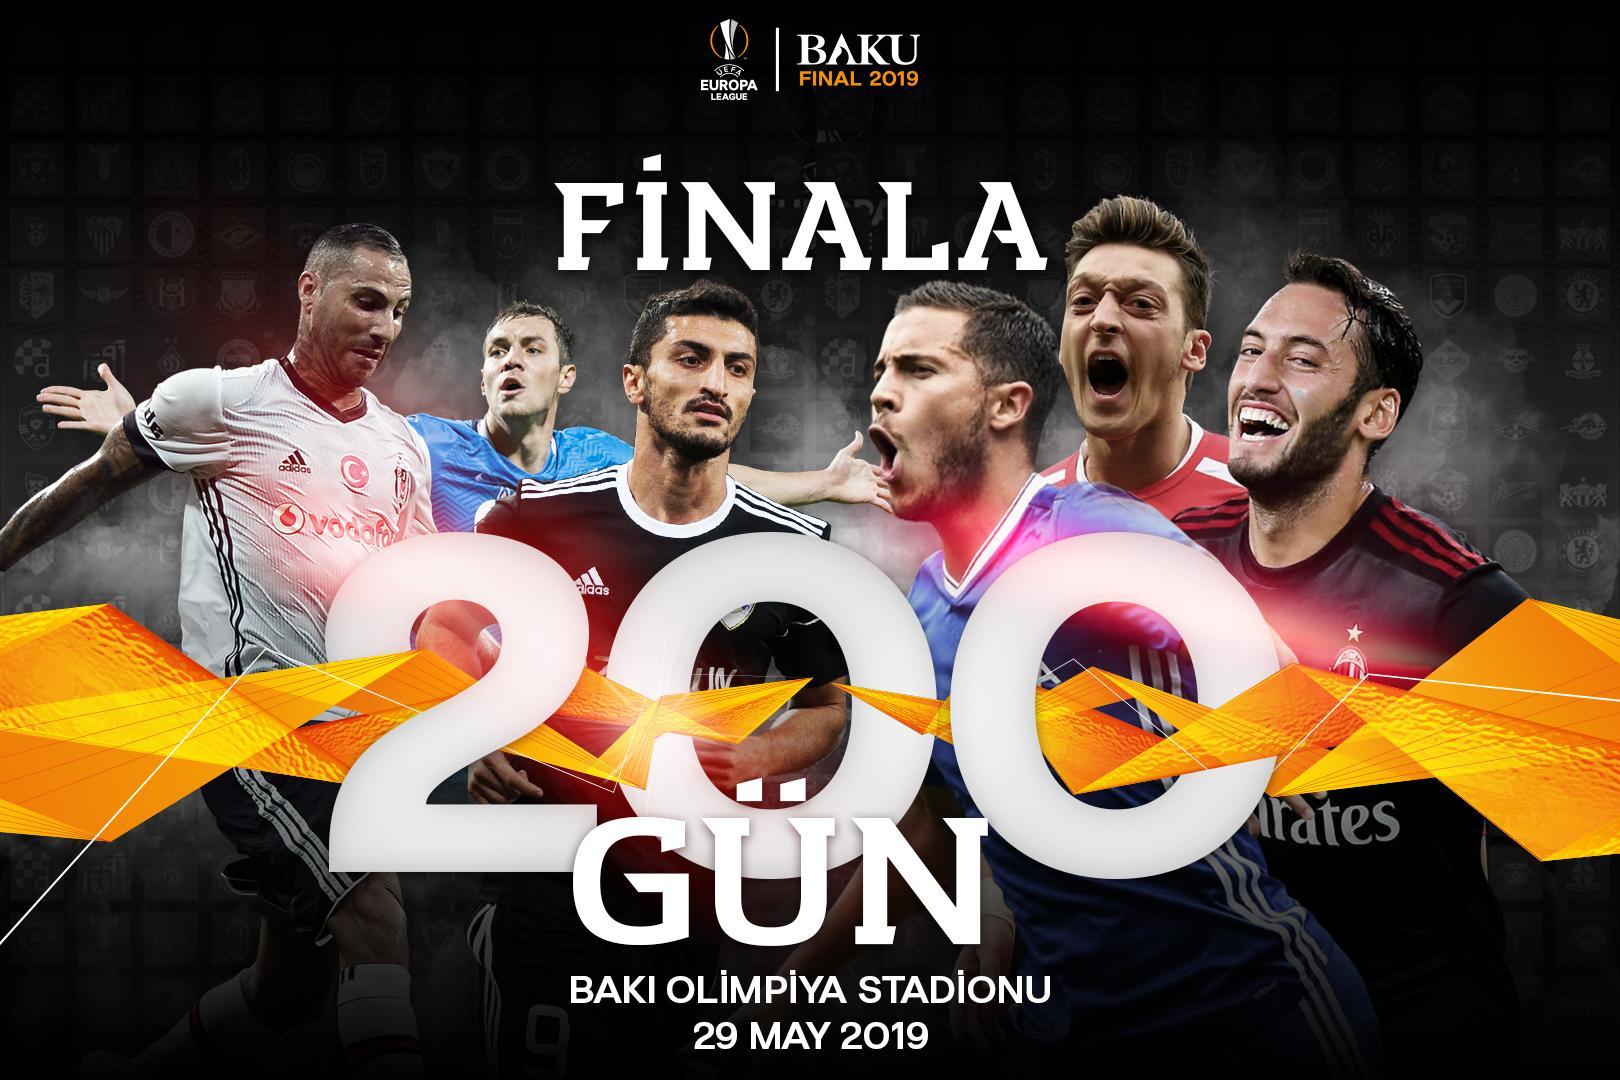 До финала Лиги Европы, который состоится в Баку, осталось 200 дней